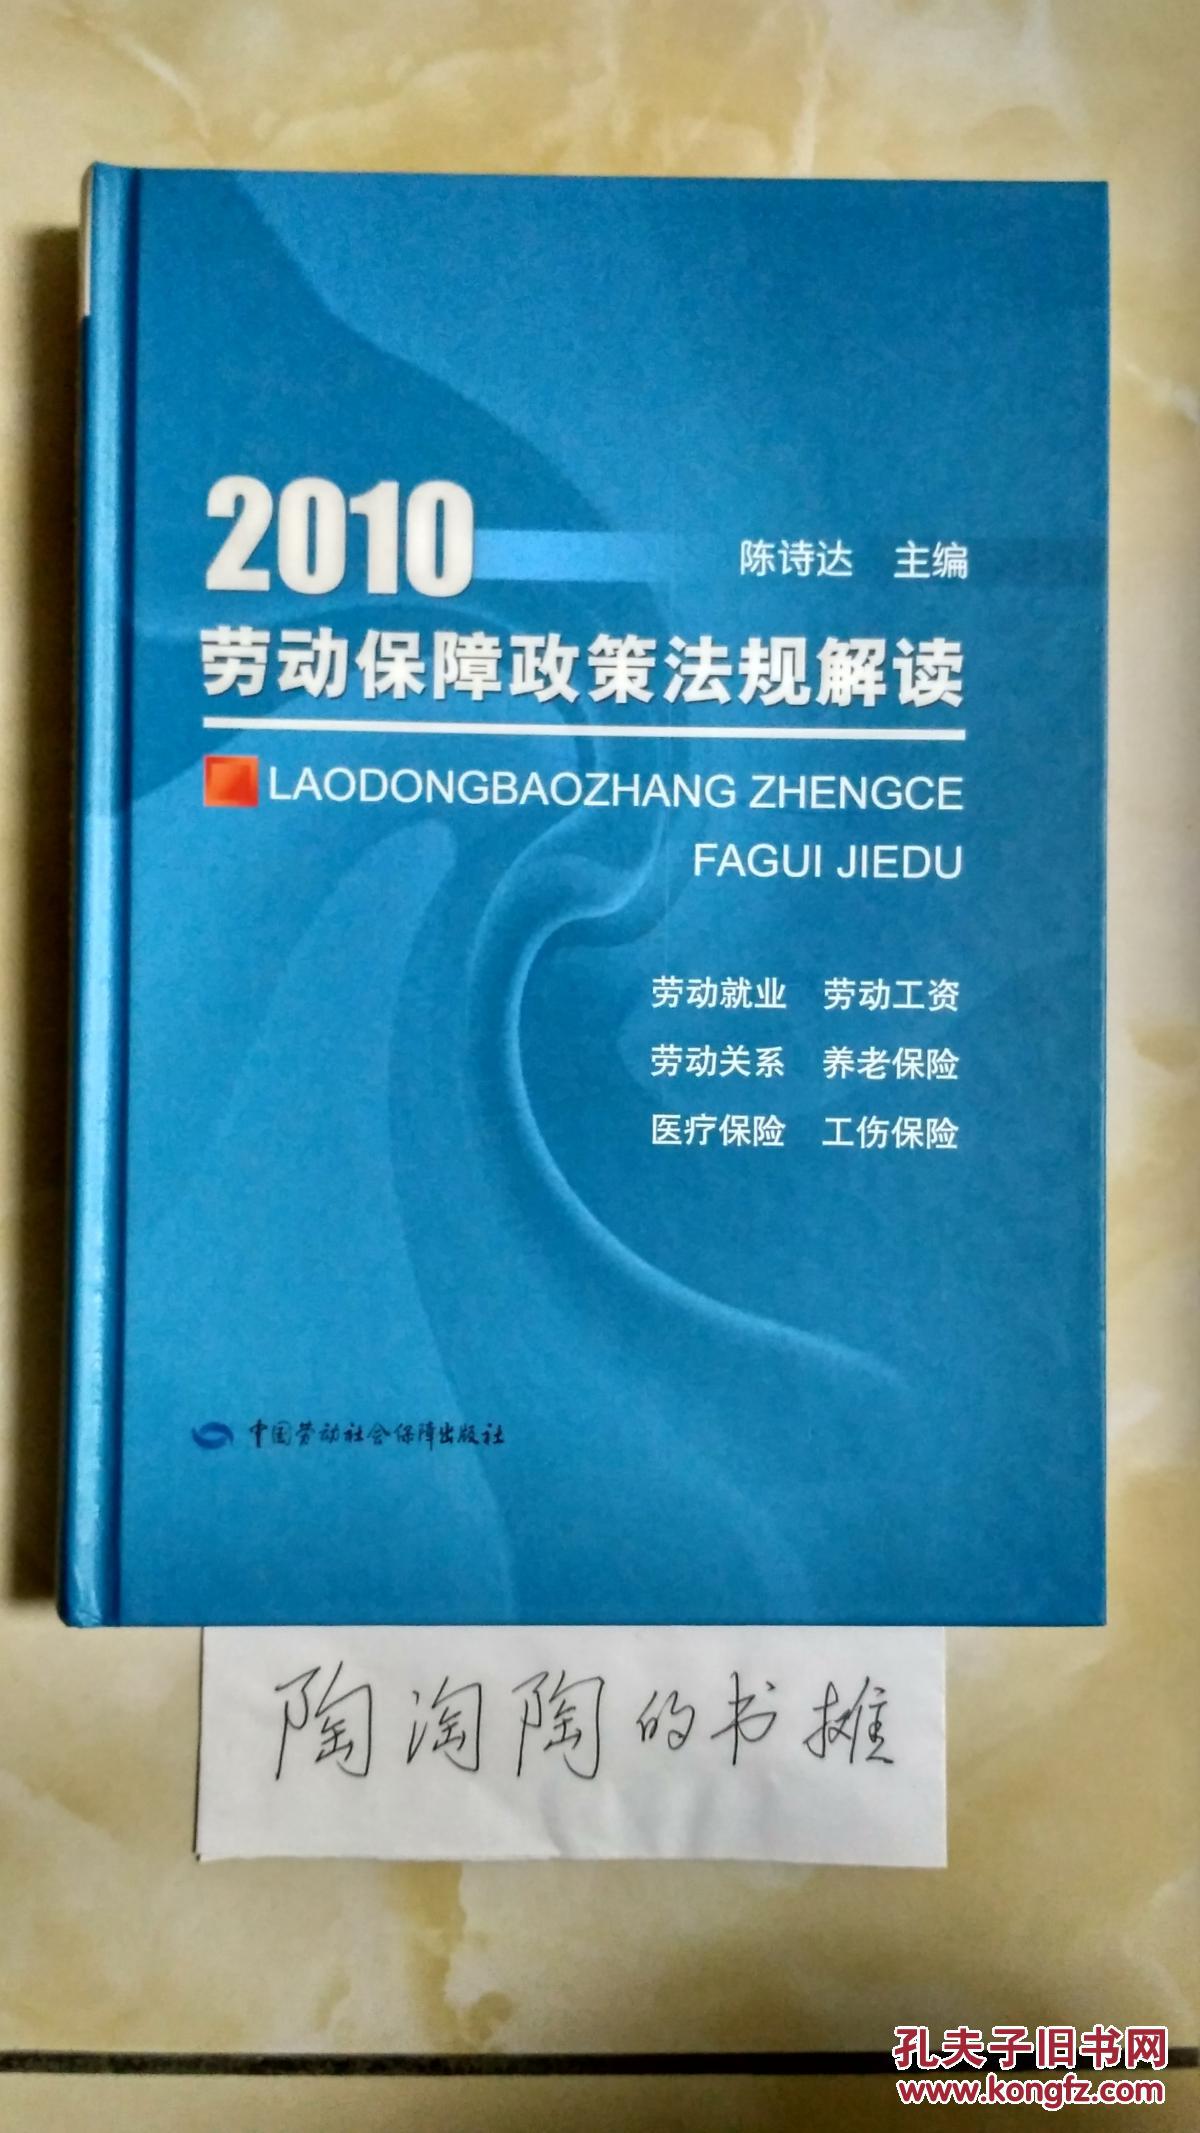 2010劳动保障政策法规解读